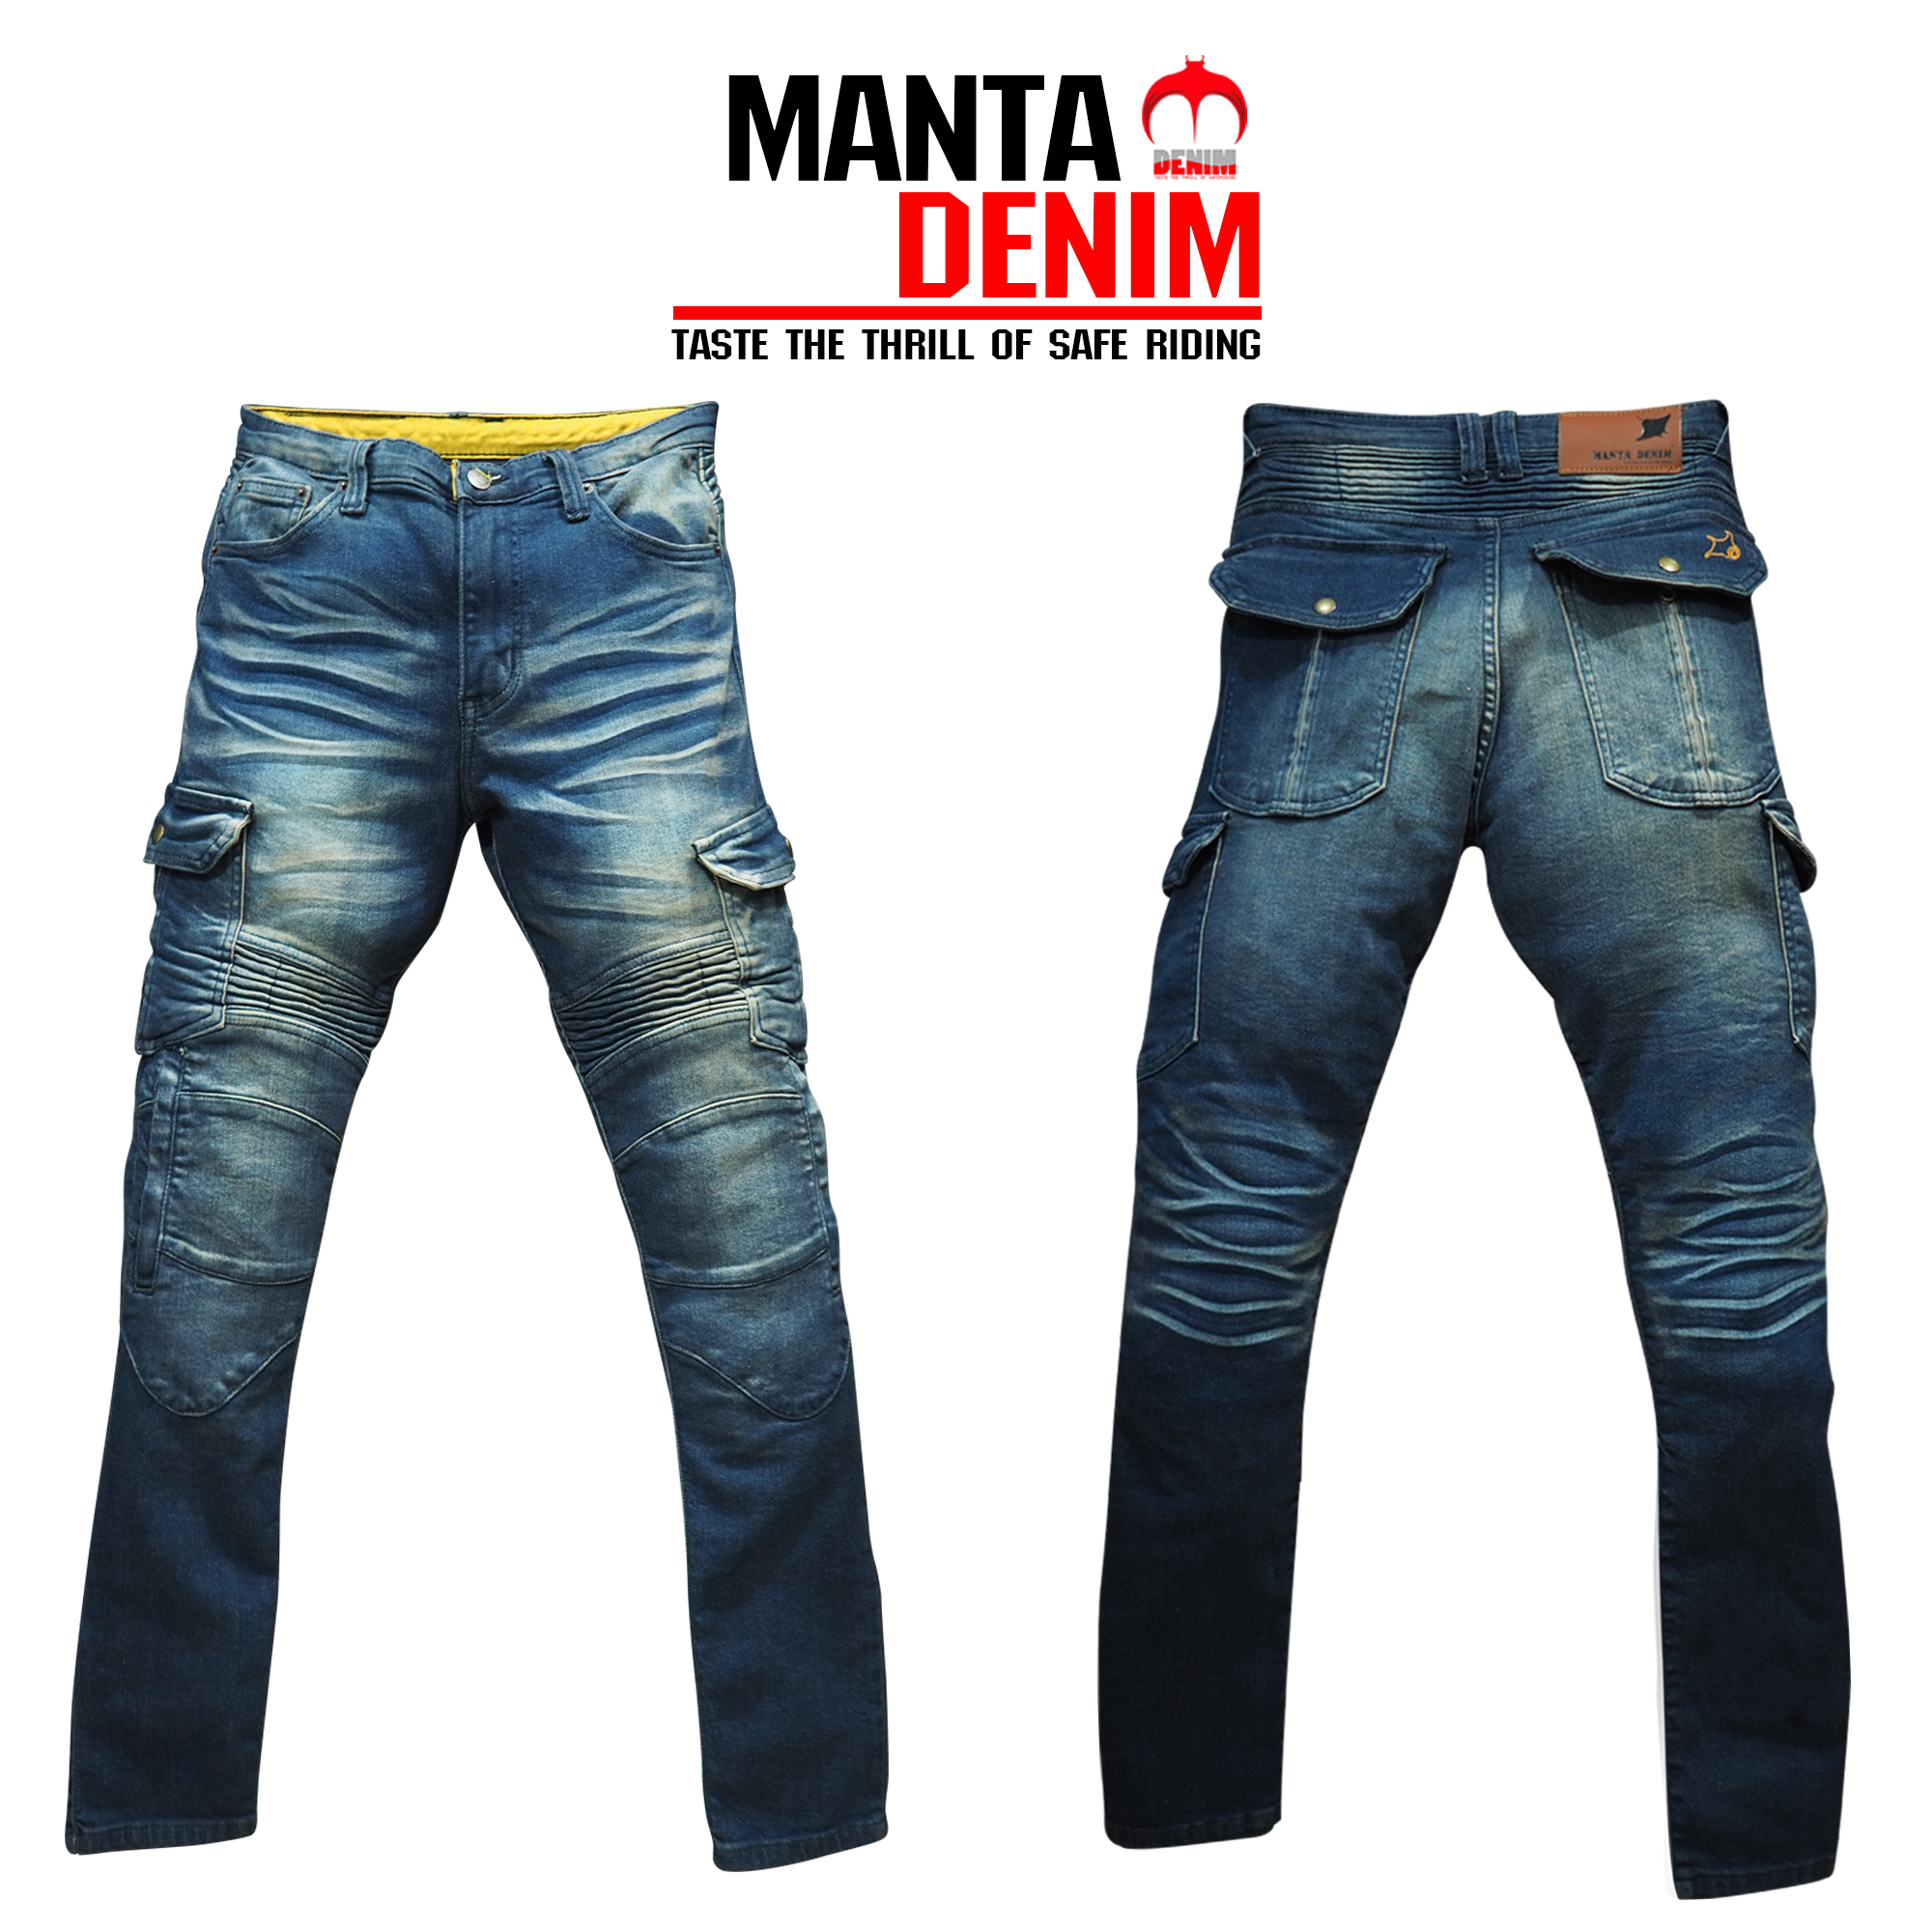 MANTA DENIM กางเกงการ์ด รุ่น SD01 พร้อมการ์ด Ce Level2 ไซส์30-38 กางเกงยีนส์ กางเกงผู้ชาย กางเกงการ์ด Biker กางเกงขี่มอไซต์